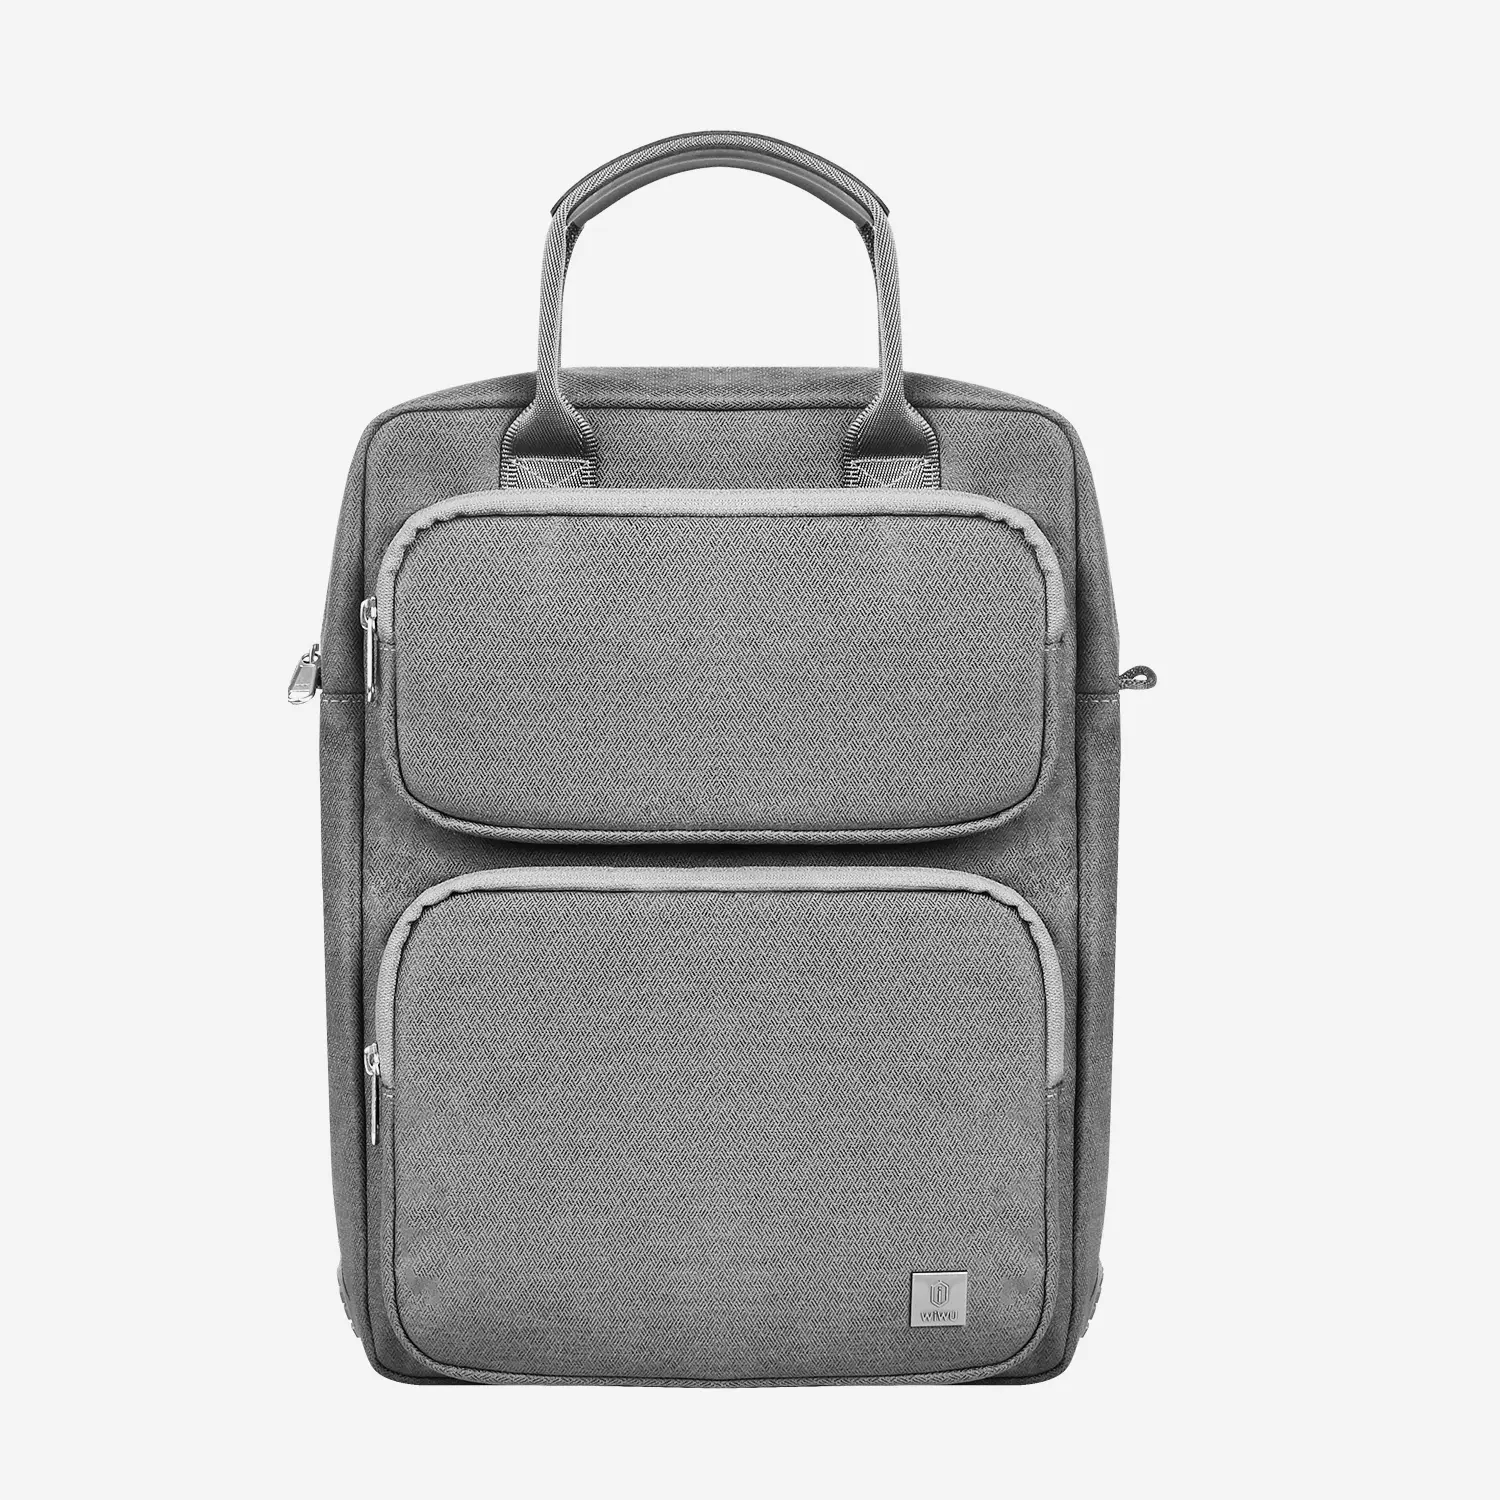 WiWU Vertical Laptop Messenger Shoulder Bag for MacBook 11 14.2 Inch Black Notebook Bag with Zipper Pockets and Belt